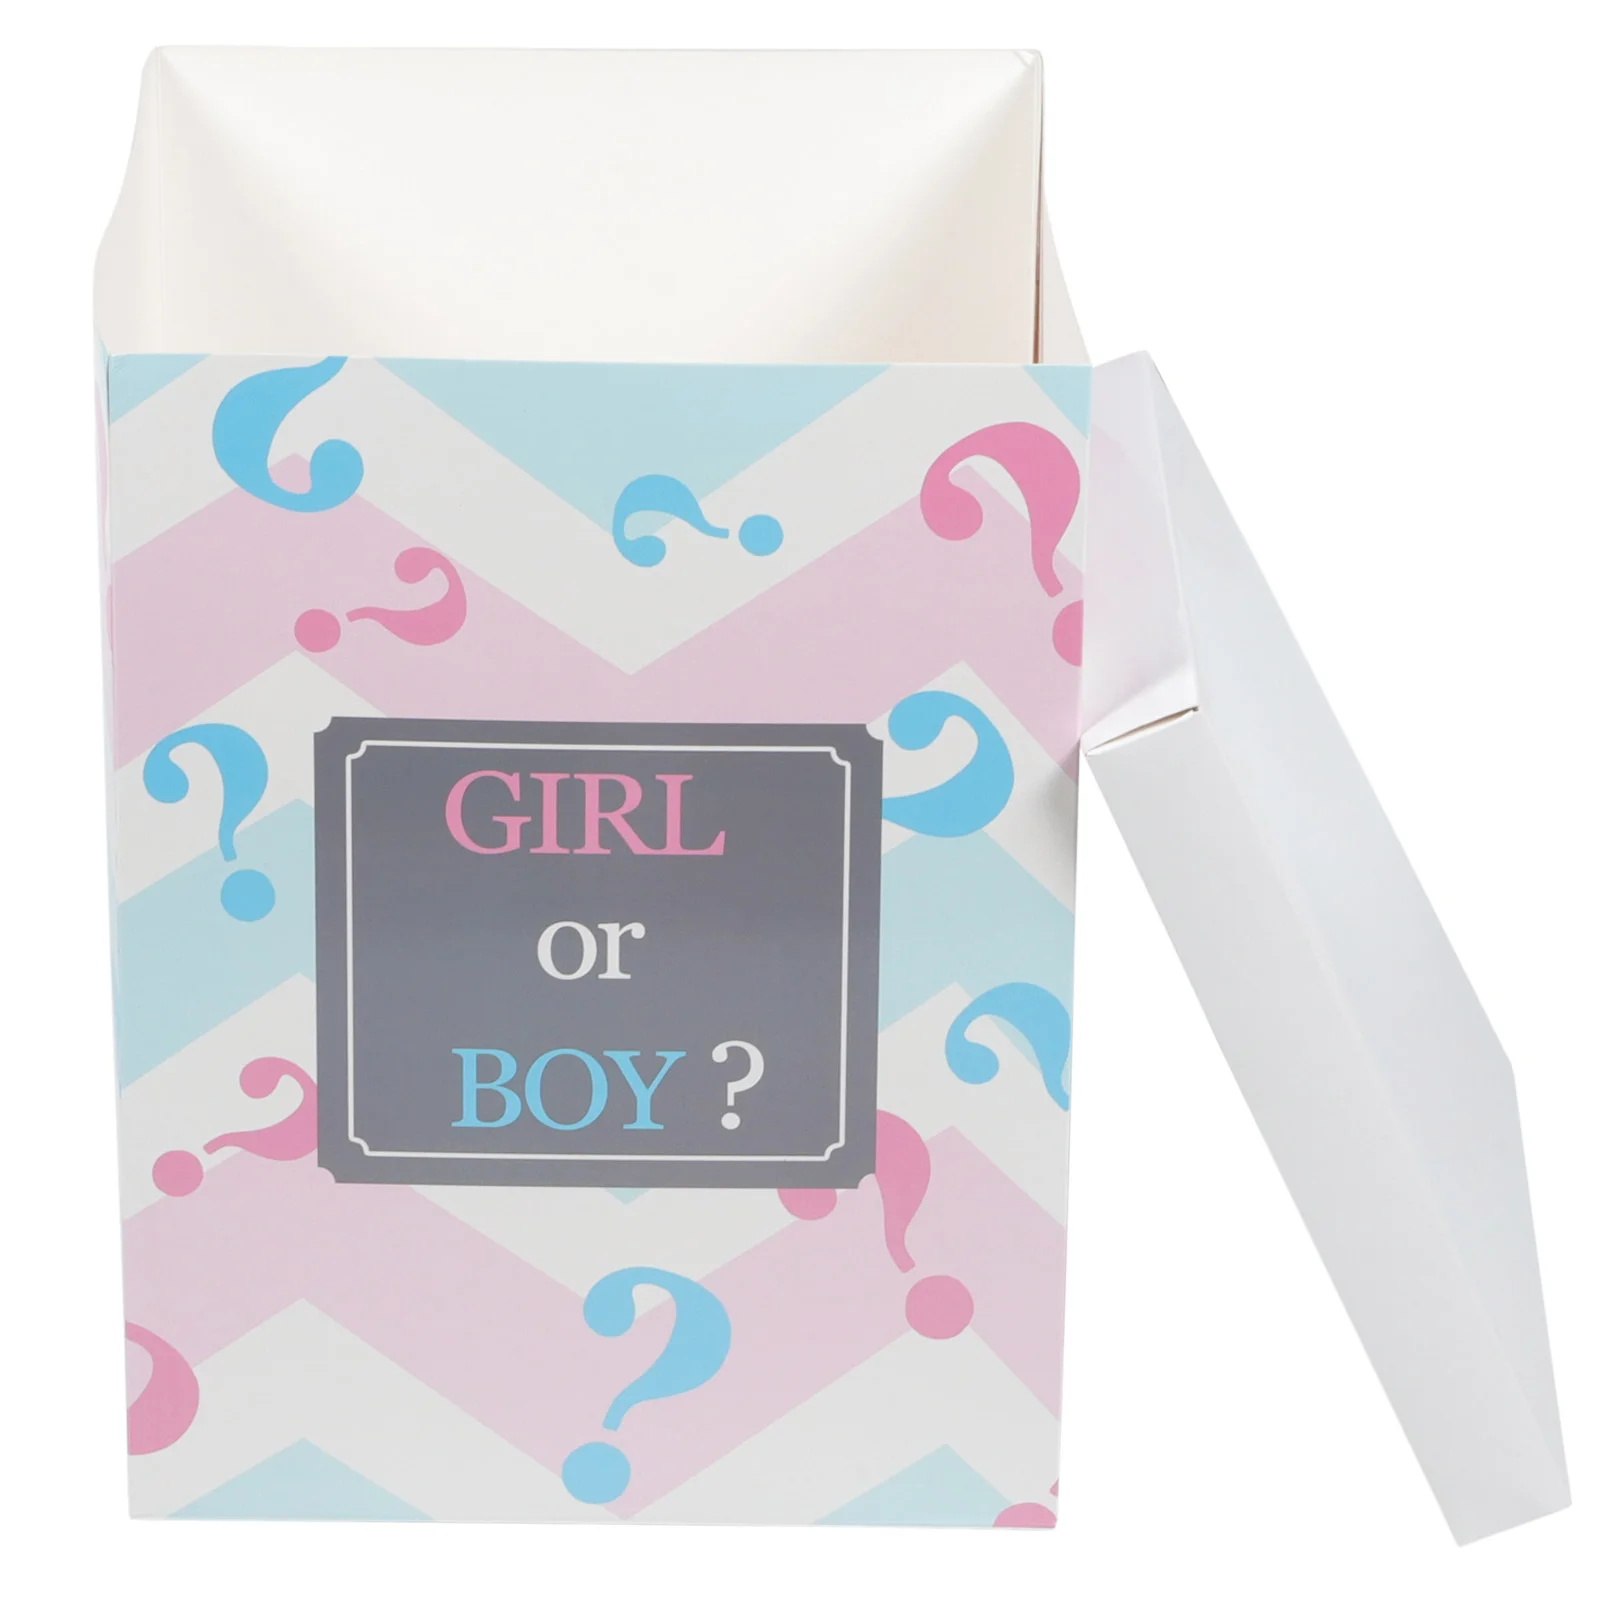 

Бумажная коробка для воздушных шаров, бумажный декоративный воздушный шар для мальчиков и девочек, декор для вечеринки в честь Дня рождения ребенка, свадьбы